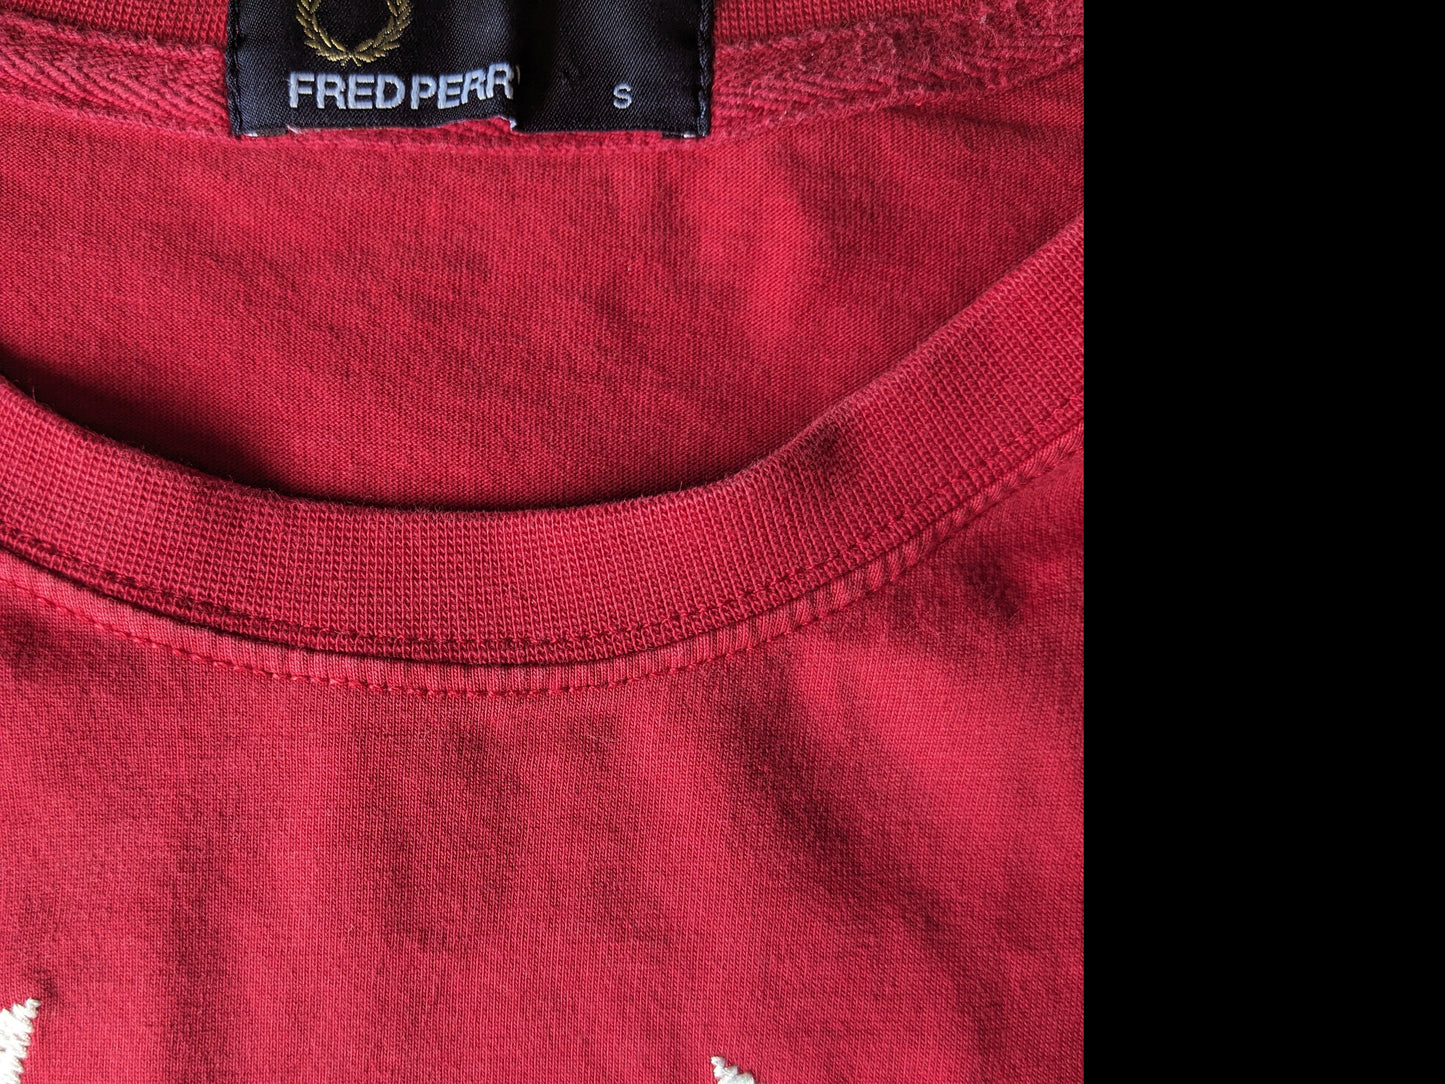 Shirt Fred Perry. Colorato rosso con applicazione bianca. Taglia S.